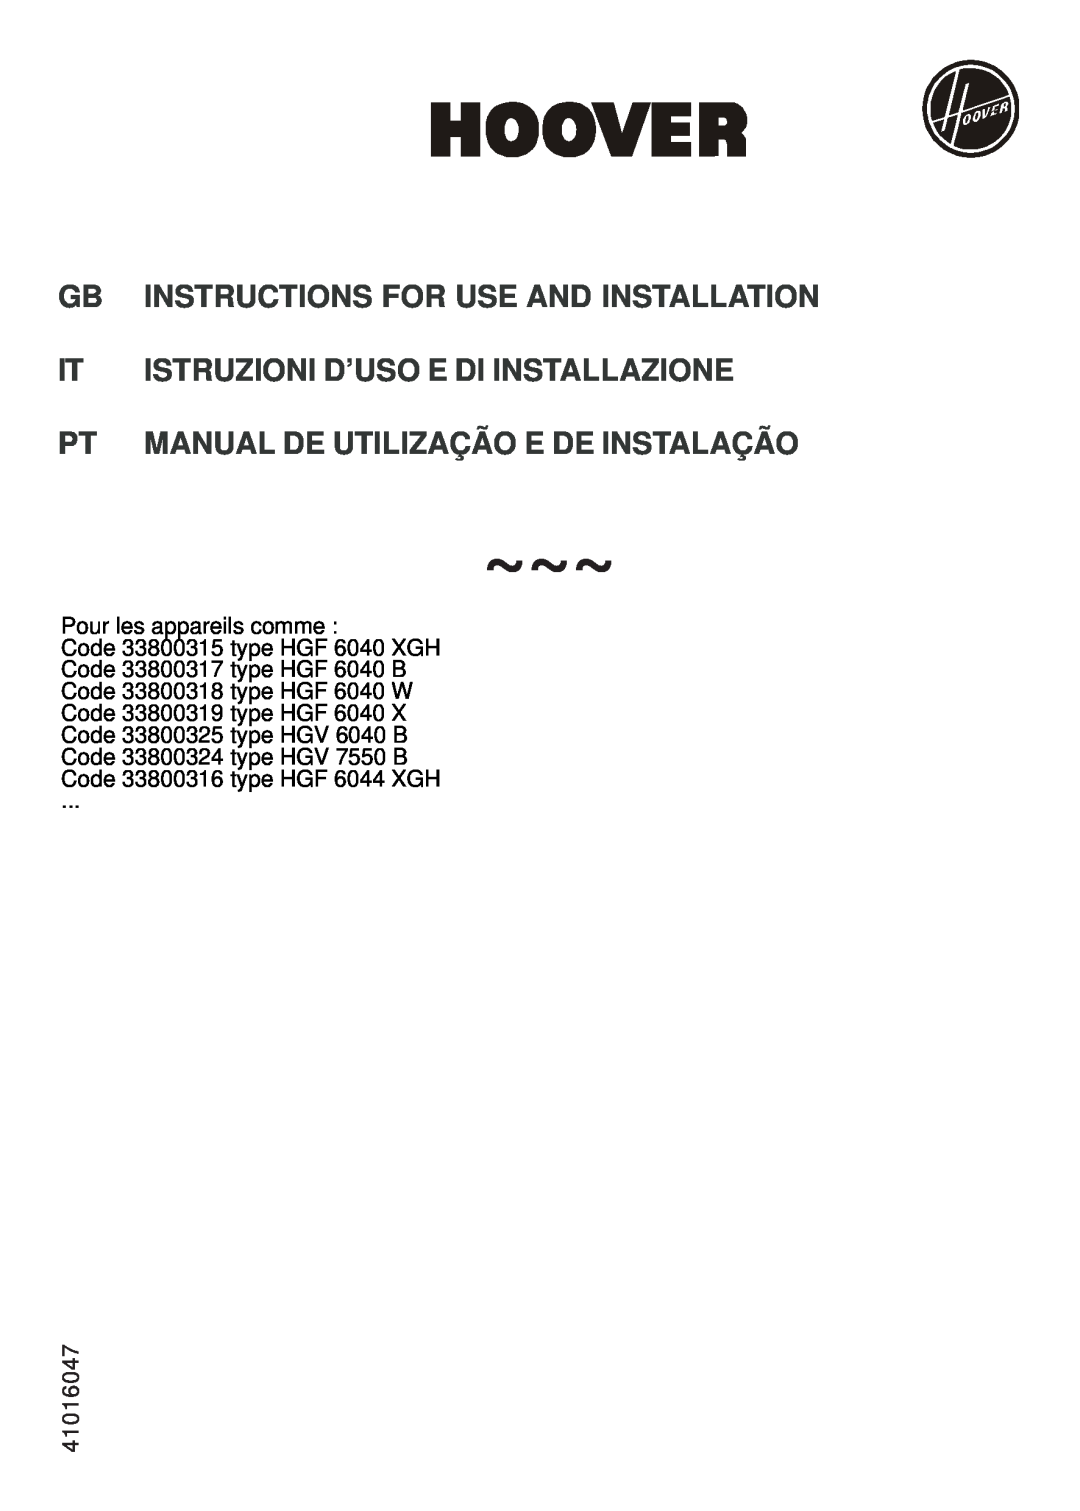 Hoover 33800315, 3380032 manual Istruzioni D’Uso E Di Installazione, Manual De Utilização E De Instalação, 41016047 